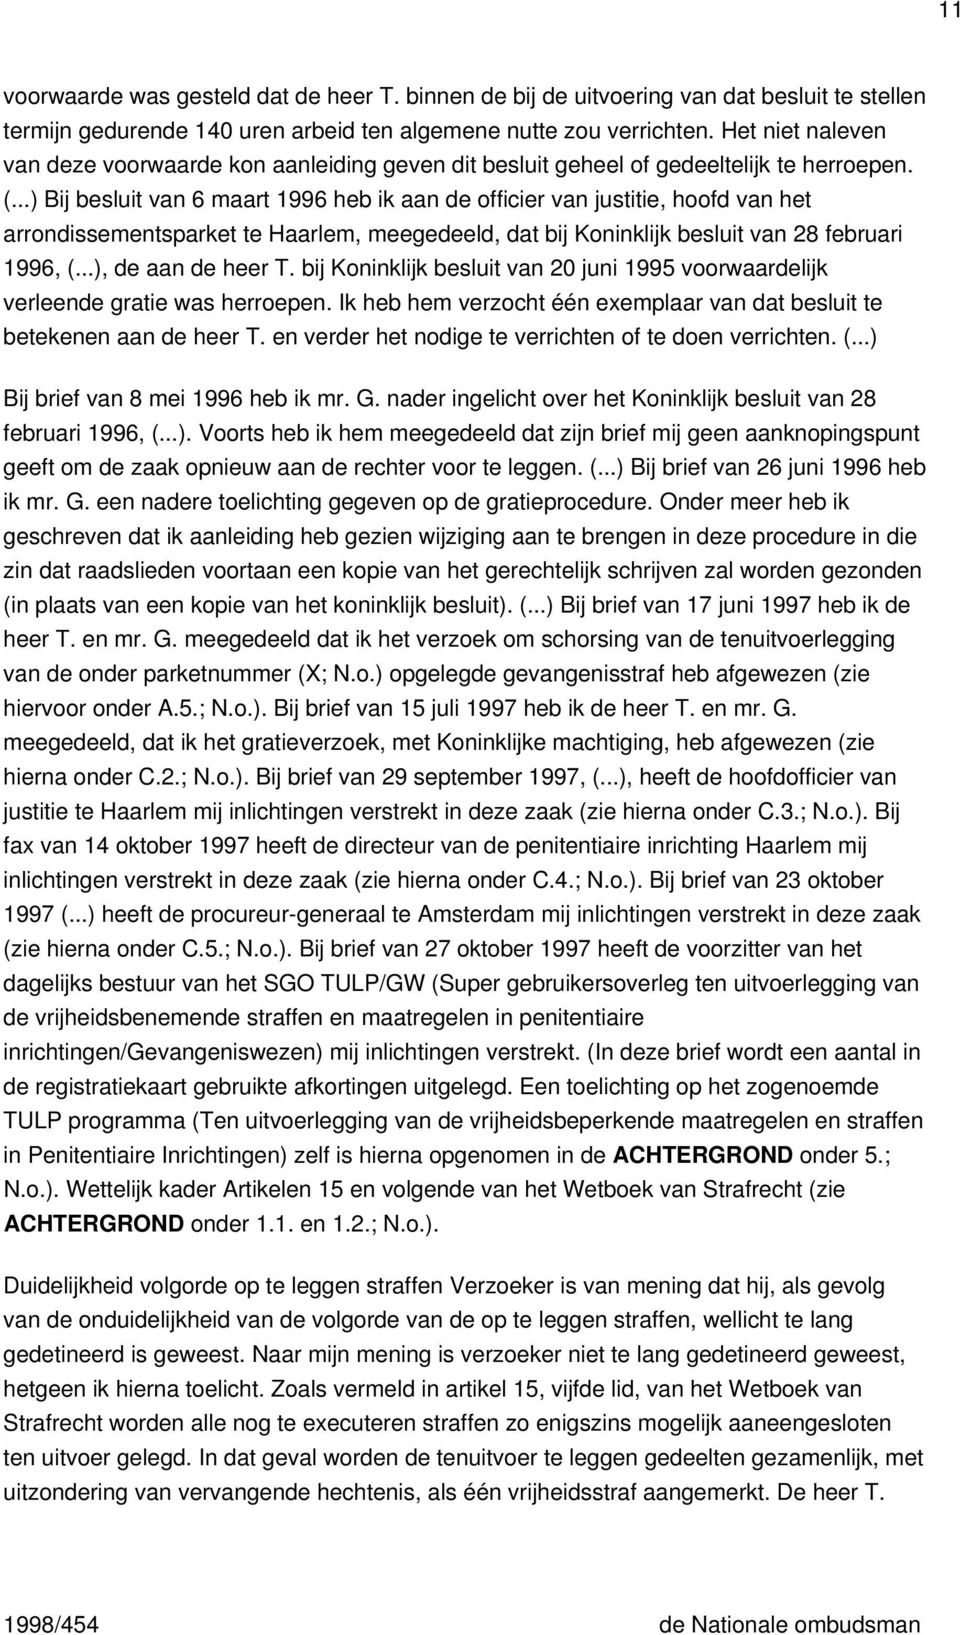 ..) Bij besluit van 6 maart 1996 heb ik aan de officier van justitie, hoofd van het arrondissementsparket te Haarlem, meegedeeld, dat bij Koninklijk besluit van 28 februari 1996, (.